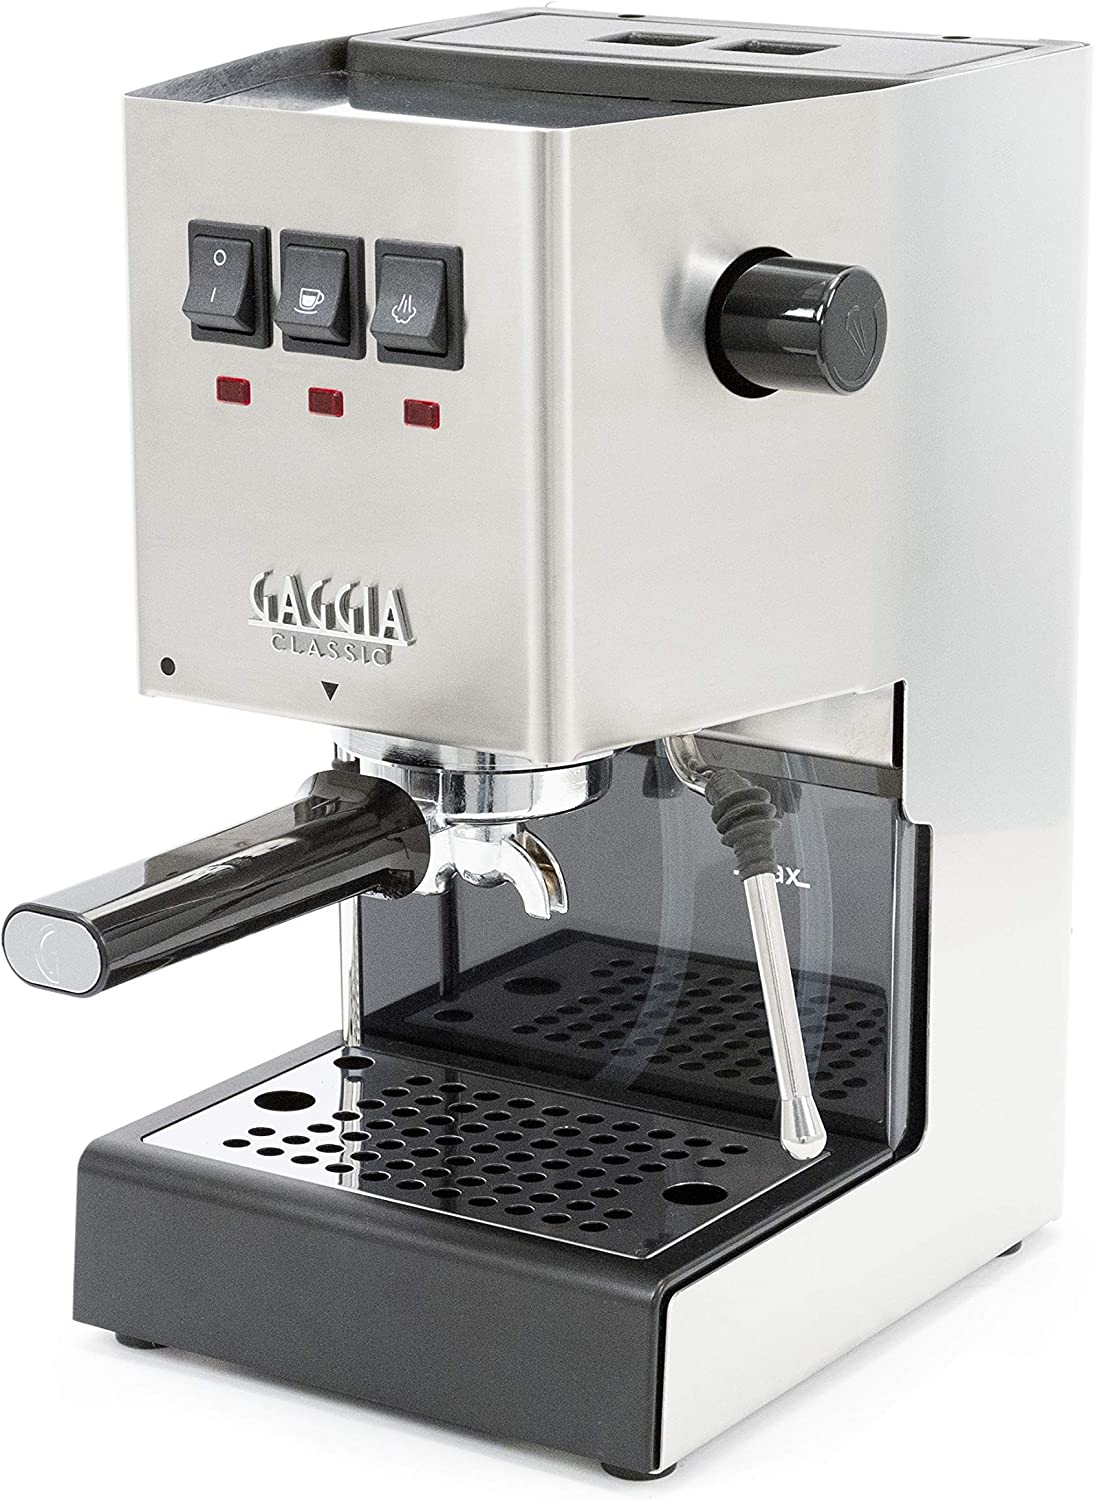 Gaggia Classic Pro best single boiler espresso machine